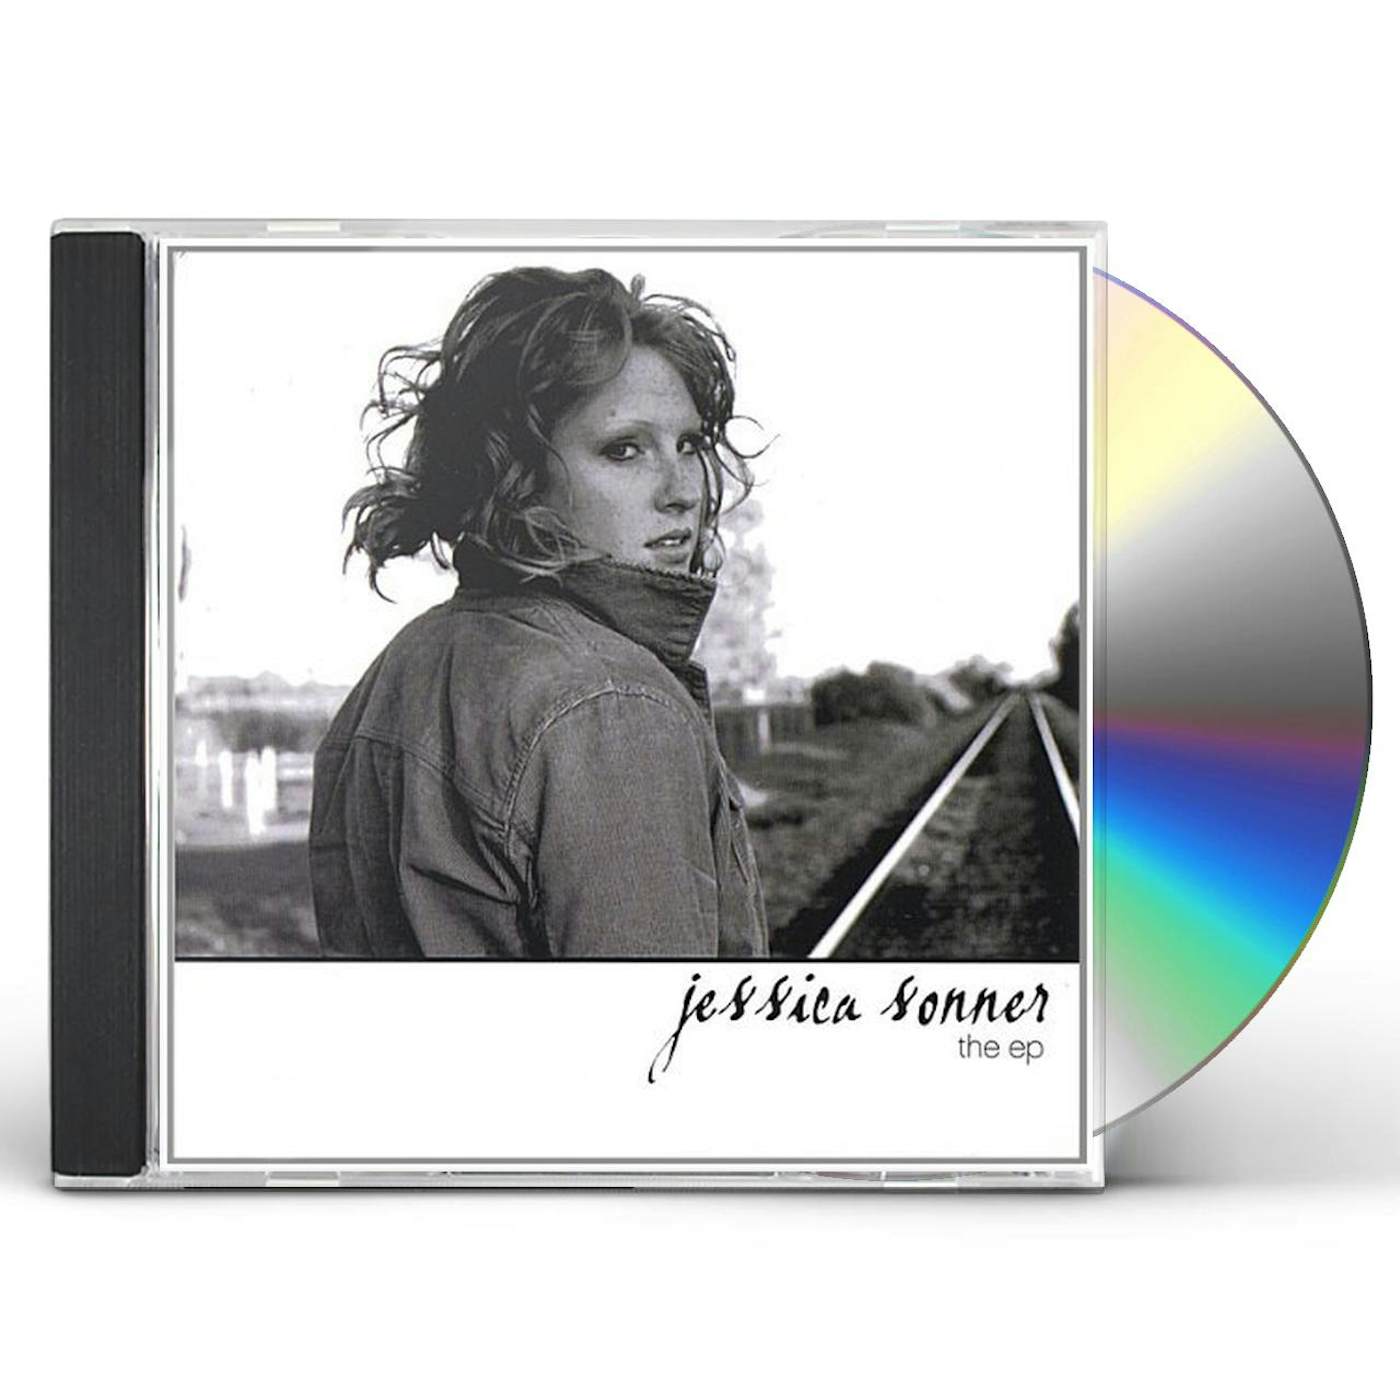 Jessica Sonner EP CD